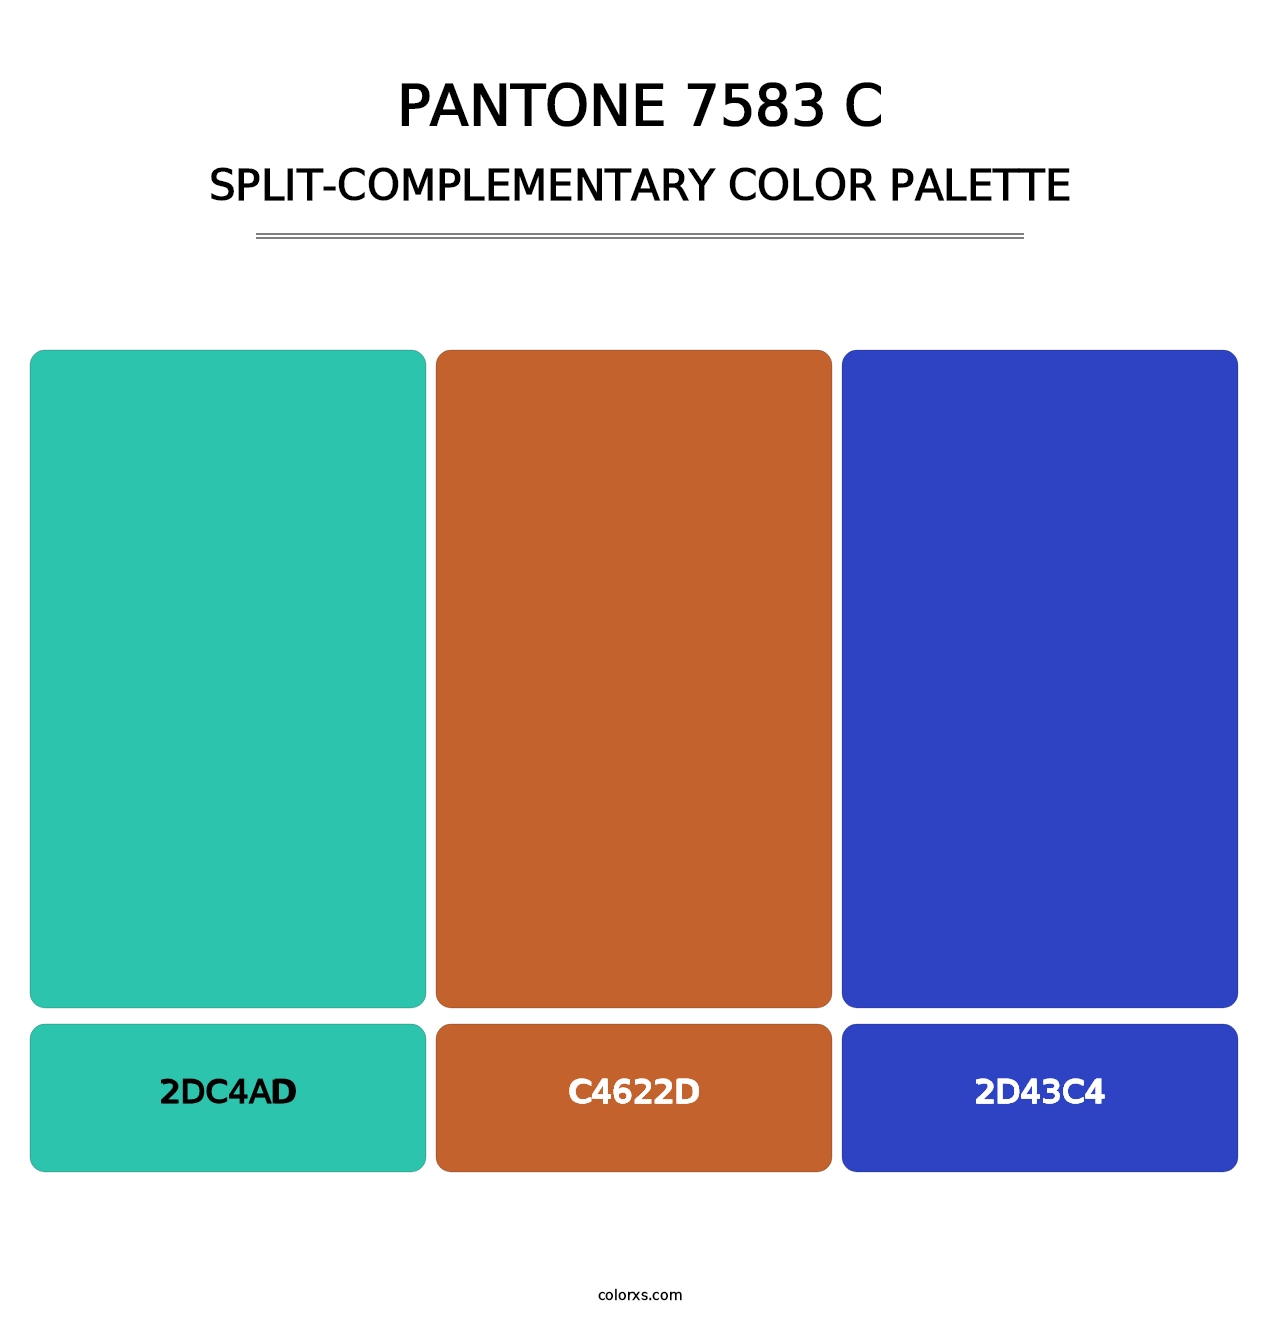 PANTONE 7583 C - Split-Complementary Color Palette